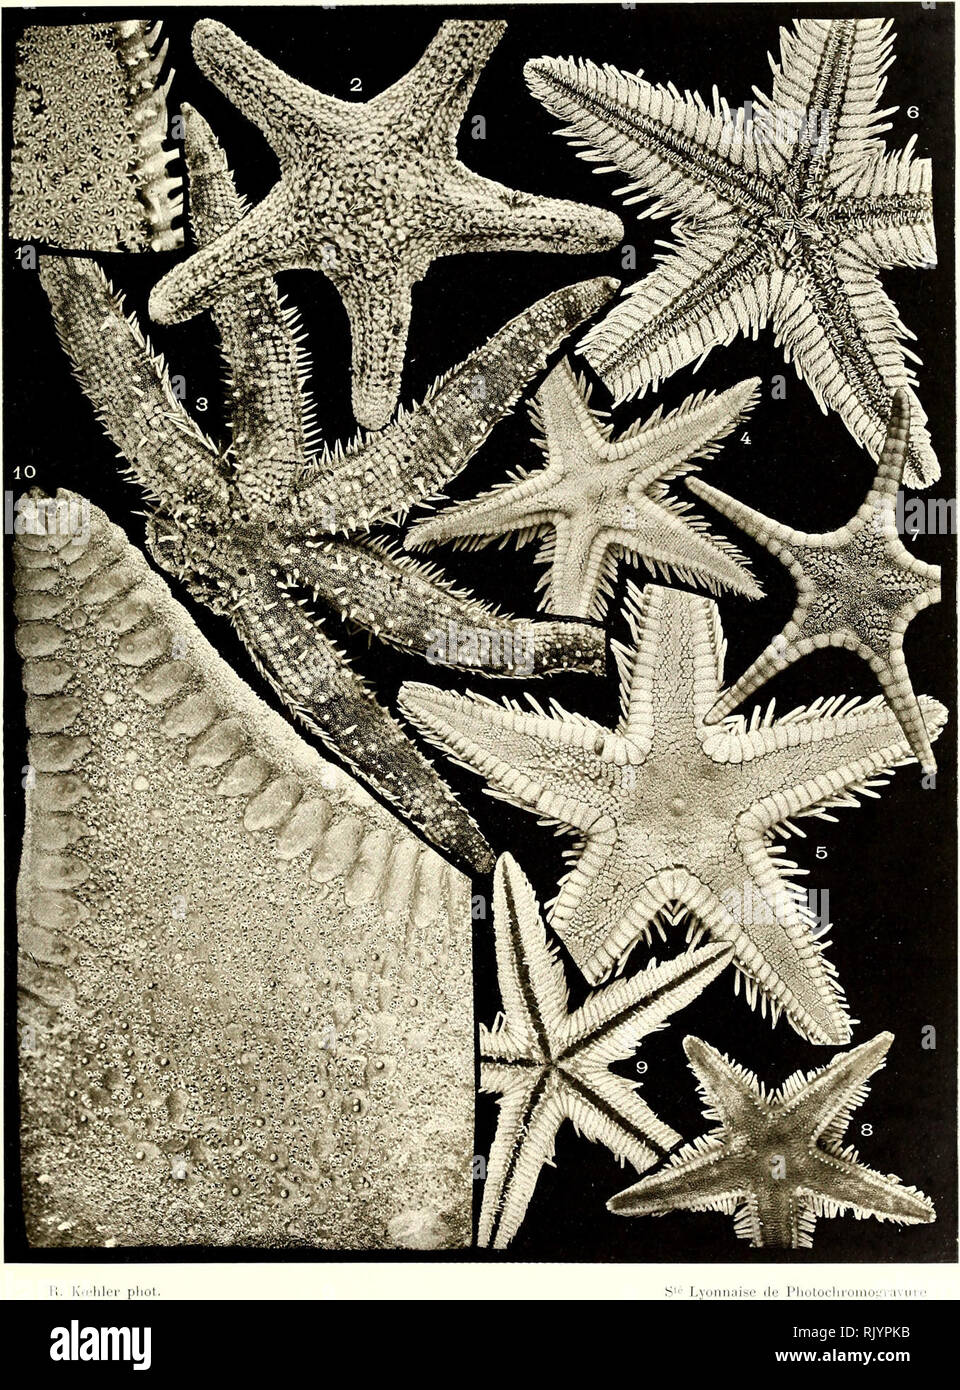 Asteiries Recuelillies Par L Investigator Dans L Oceian Indien Starfishes K A11 U I A A S T A N 1k S L I T T O P A L E S